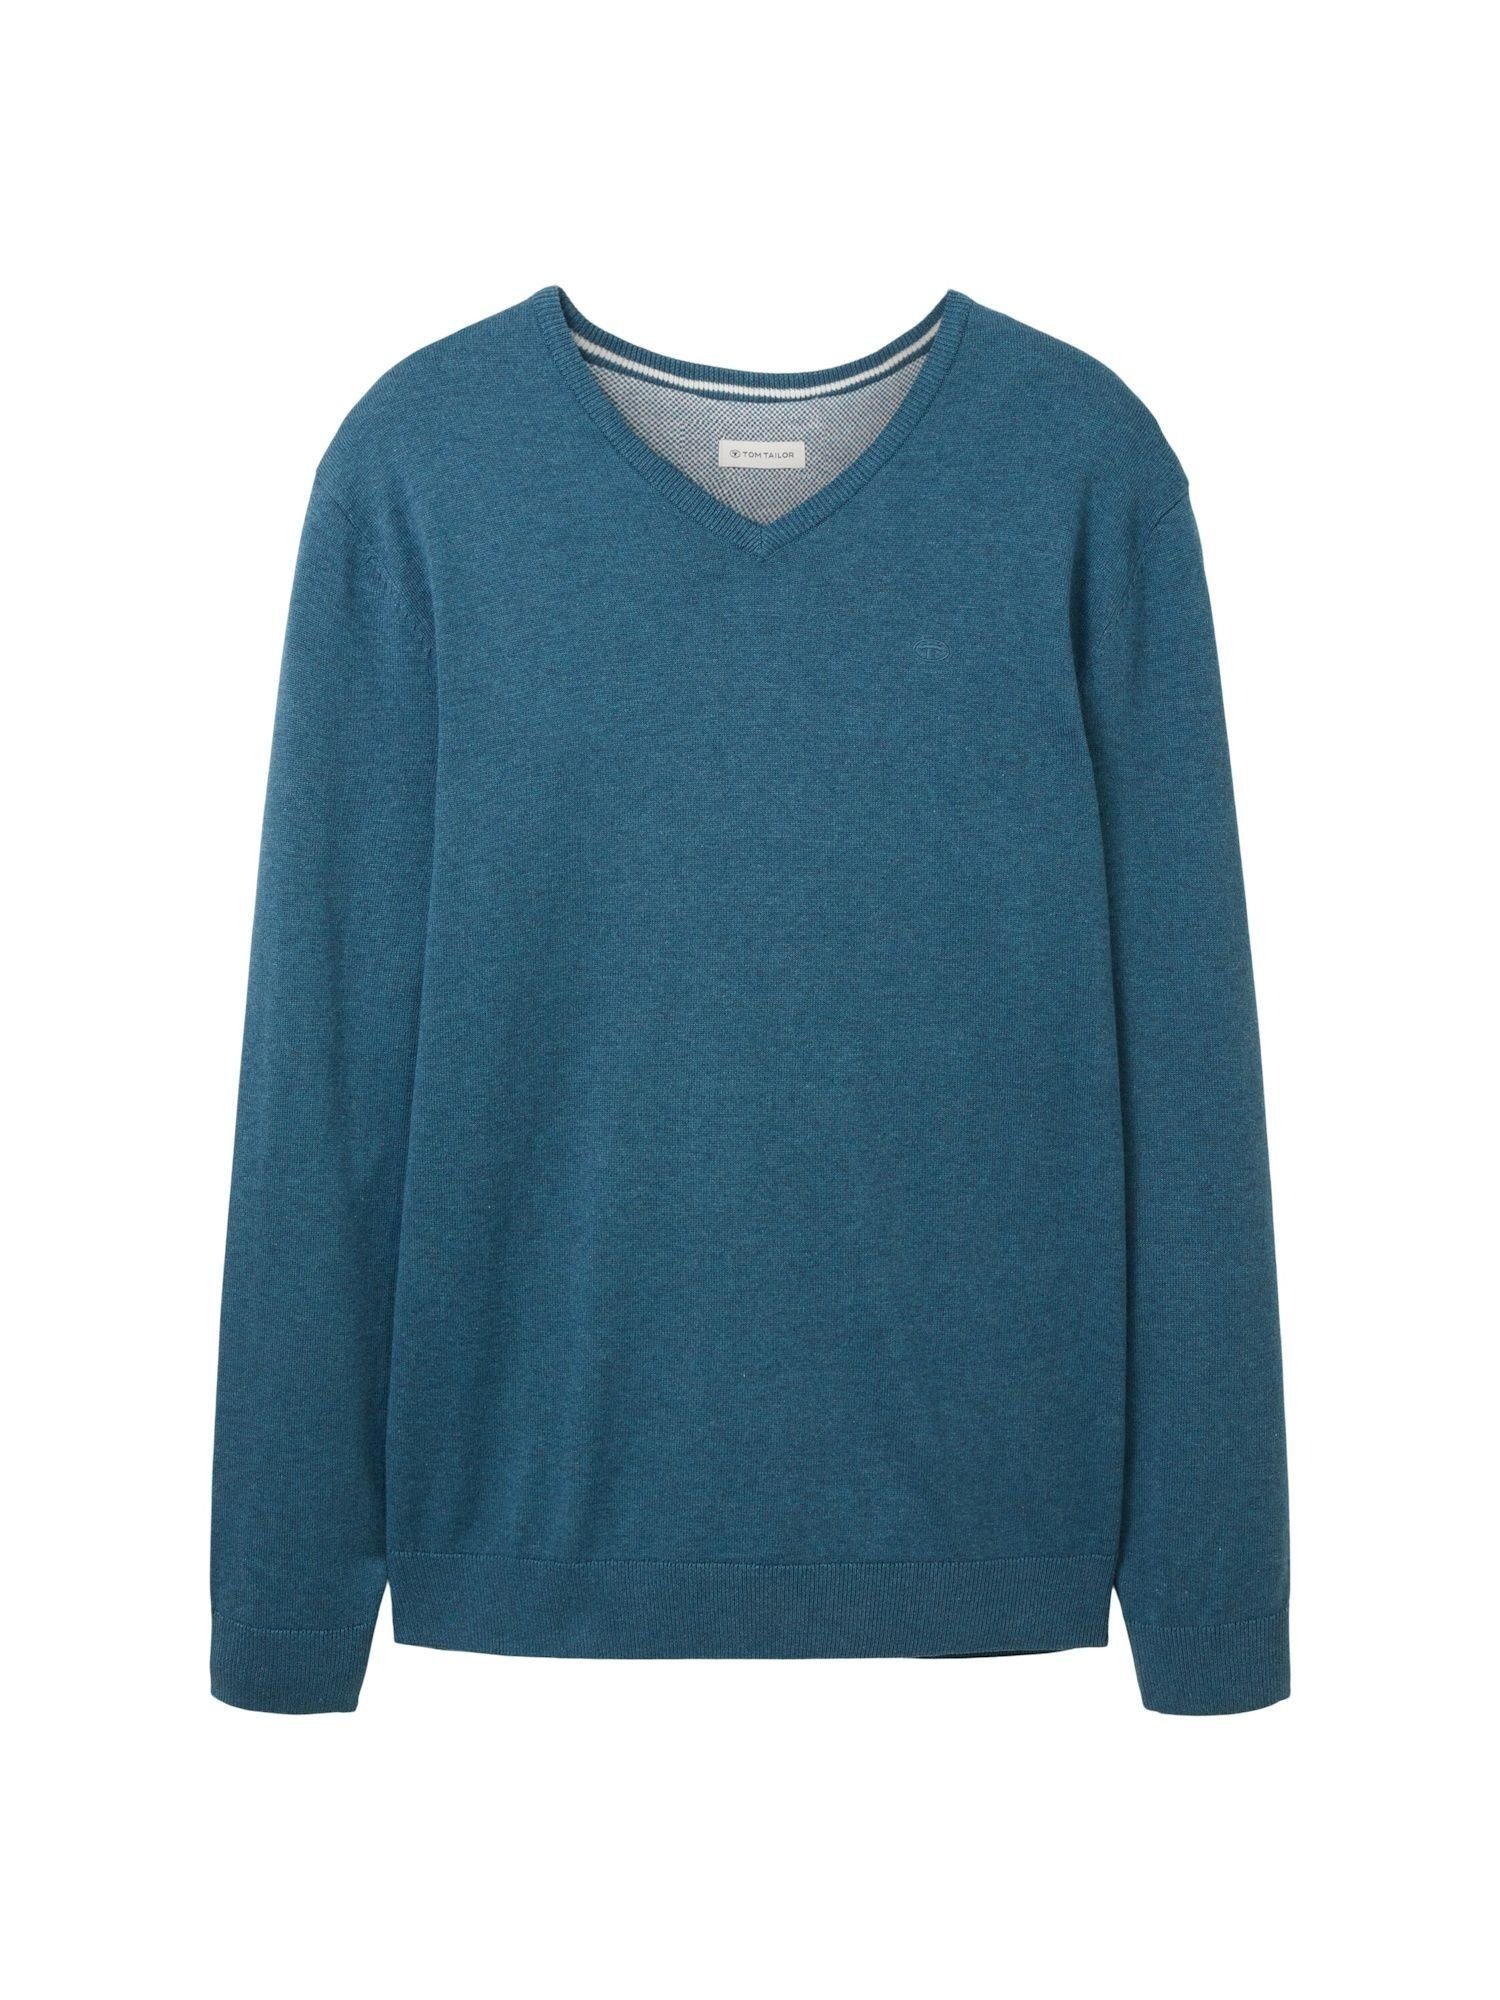 Rippbündchen TAILOR (1-tlg) Sweatshirt Pullover green TOM meliert dark Sweatshirt melange mit